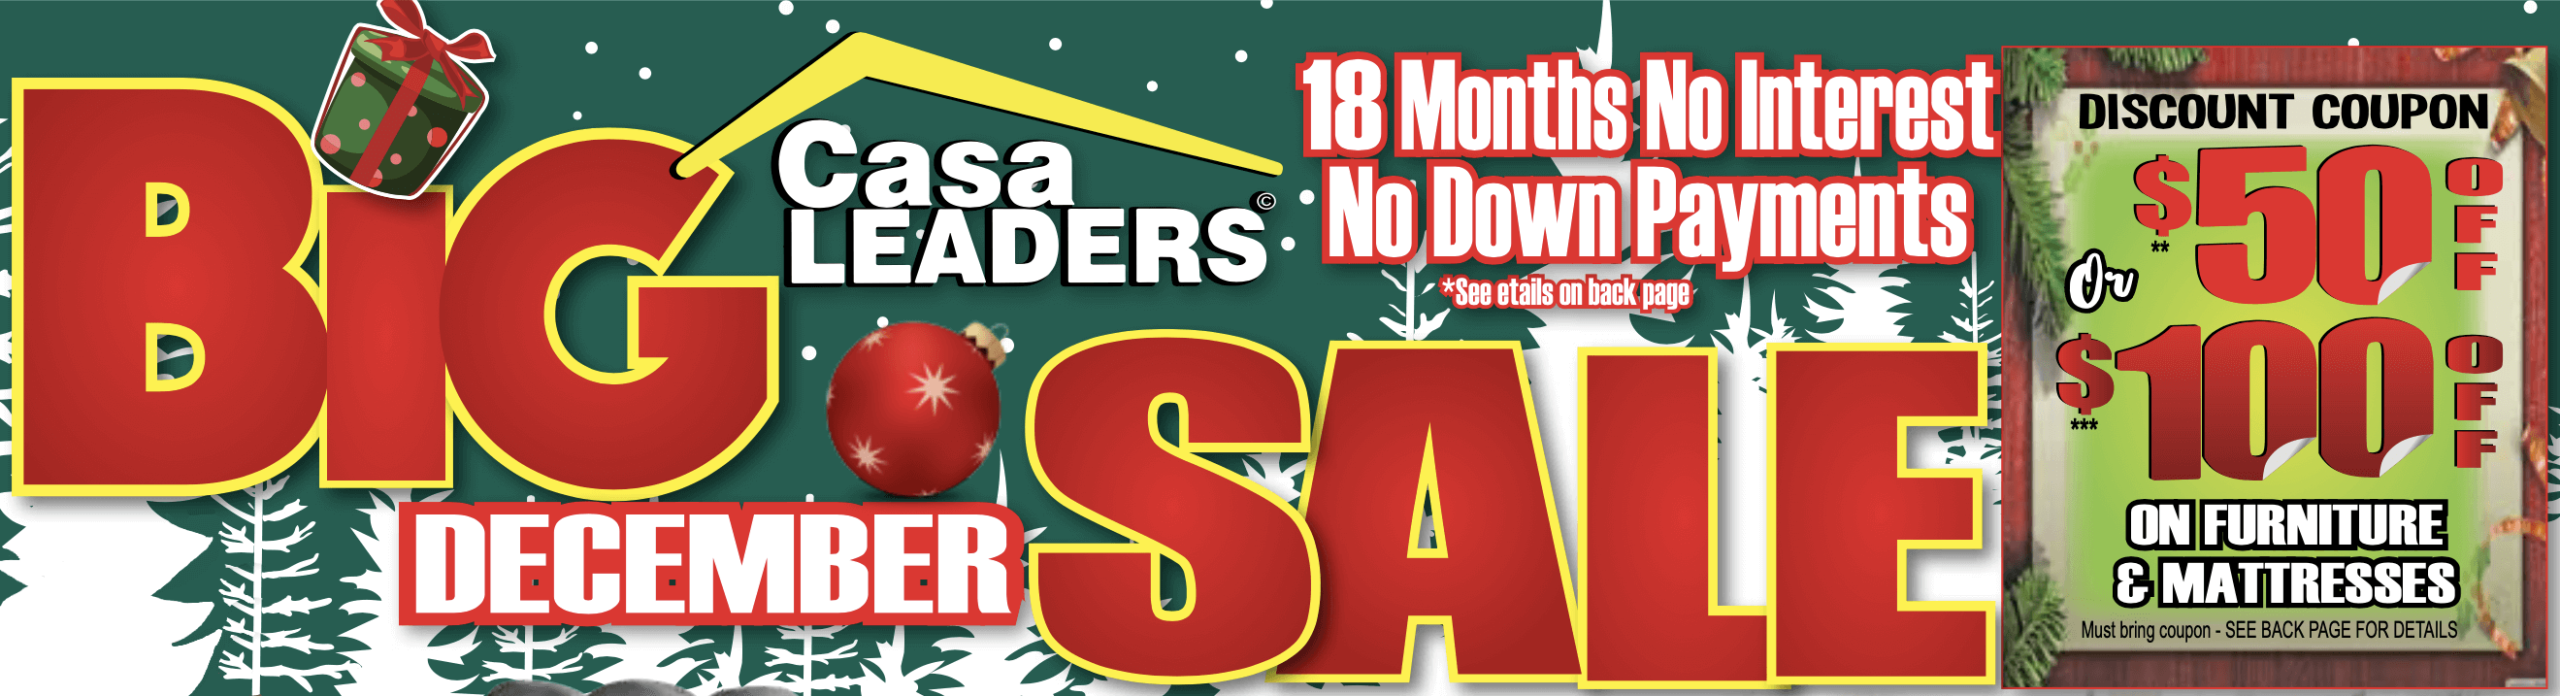 December Big Sale Banner image